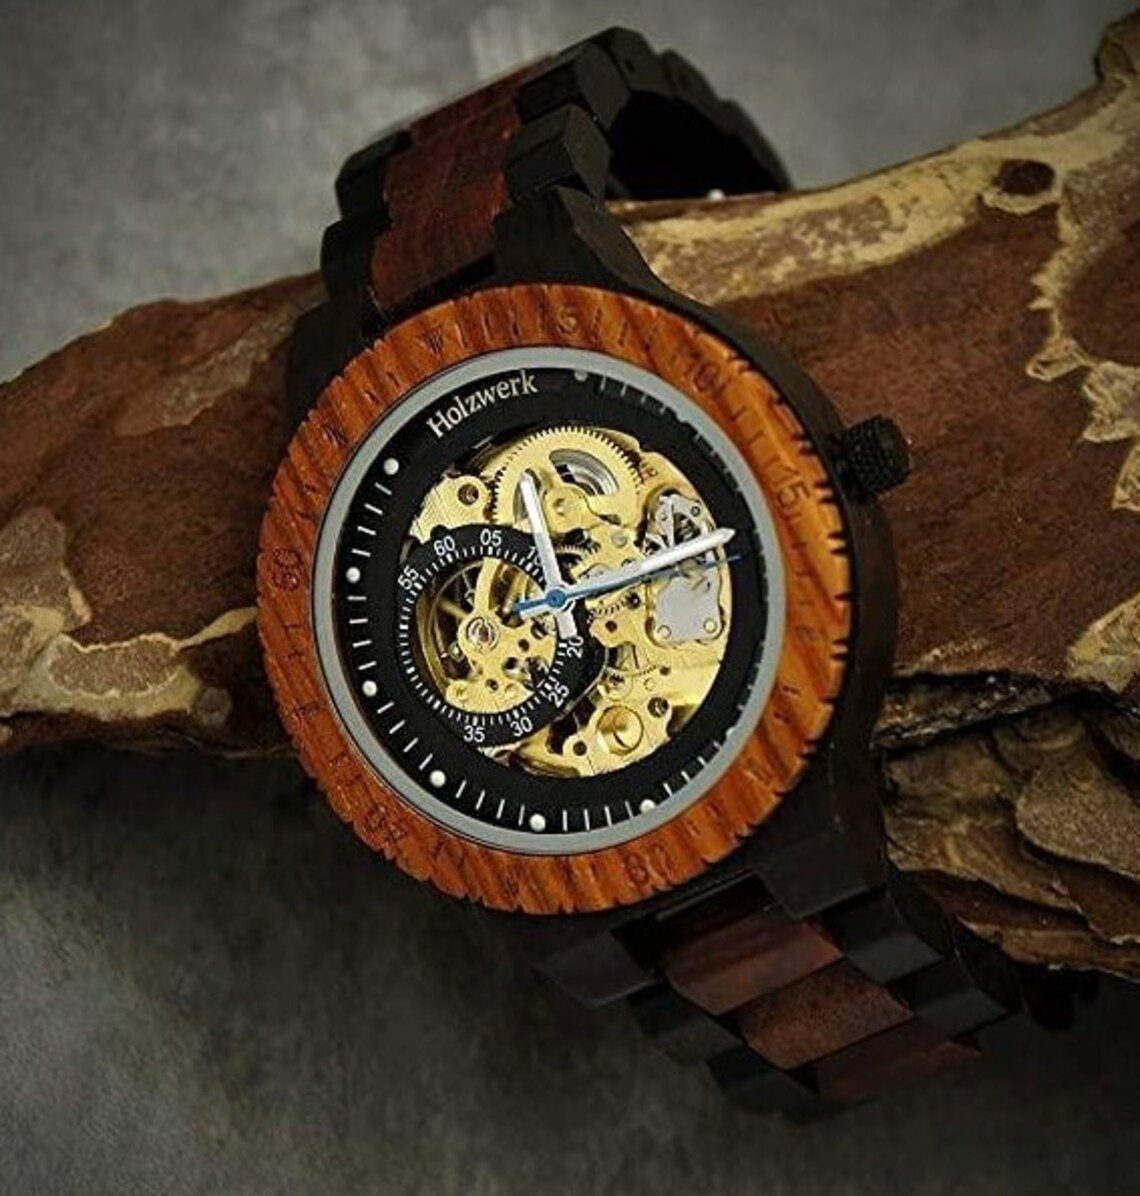 Holzwerk Automatikuhr DASSEL Armband Holz braun, Herren in offene Unruhe dunkel gold Uhr